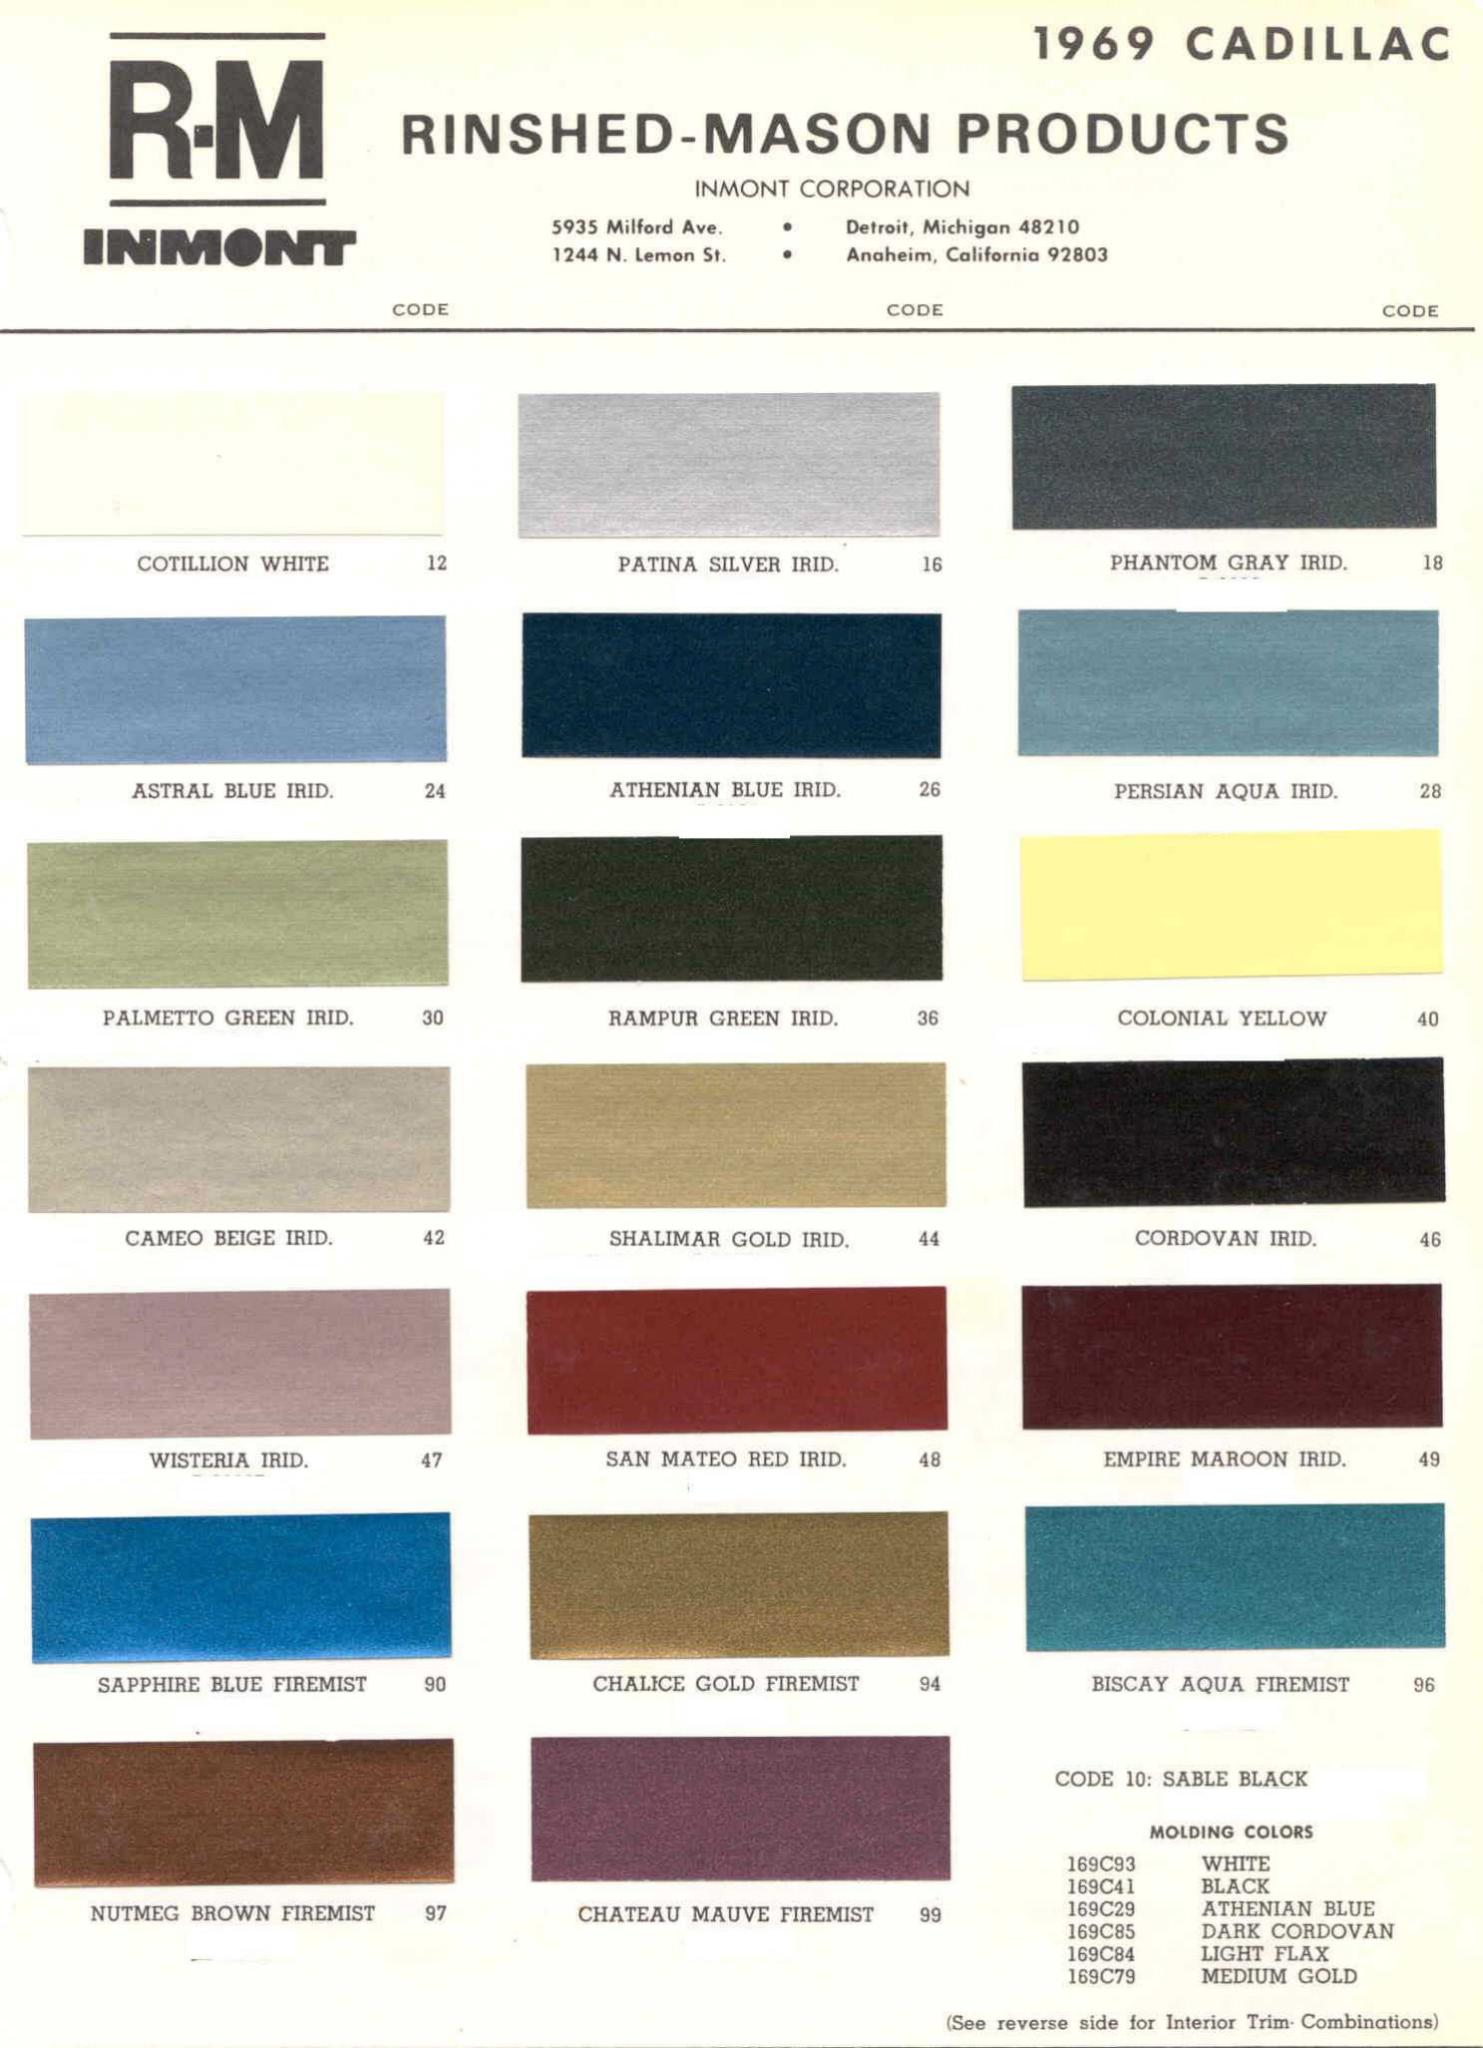 Cadillac Paint Paint Color Example Charts, Descriptions